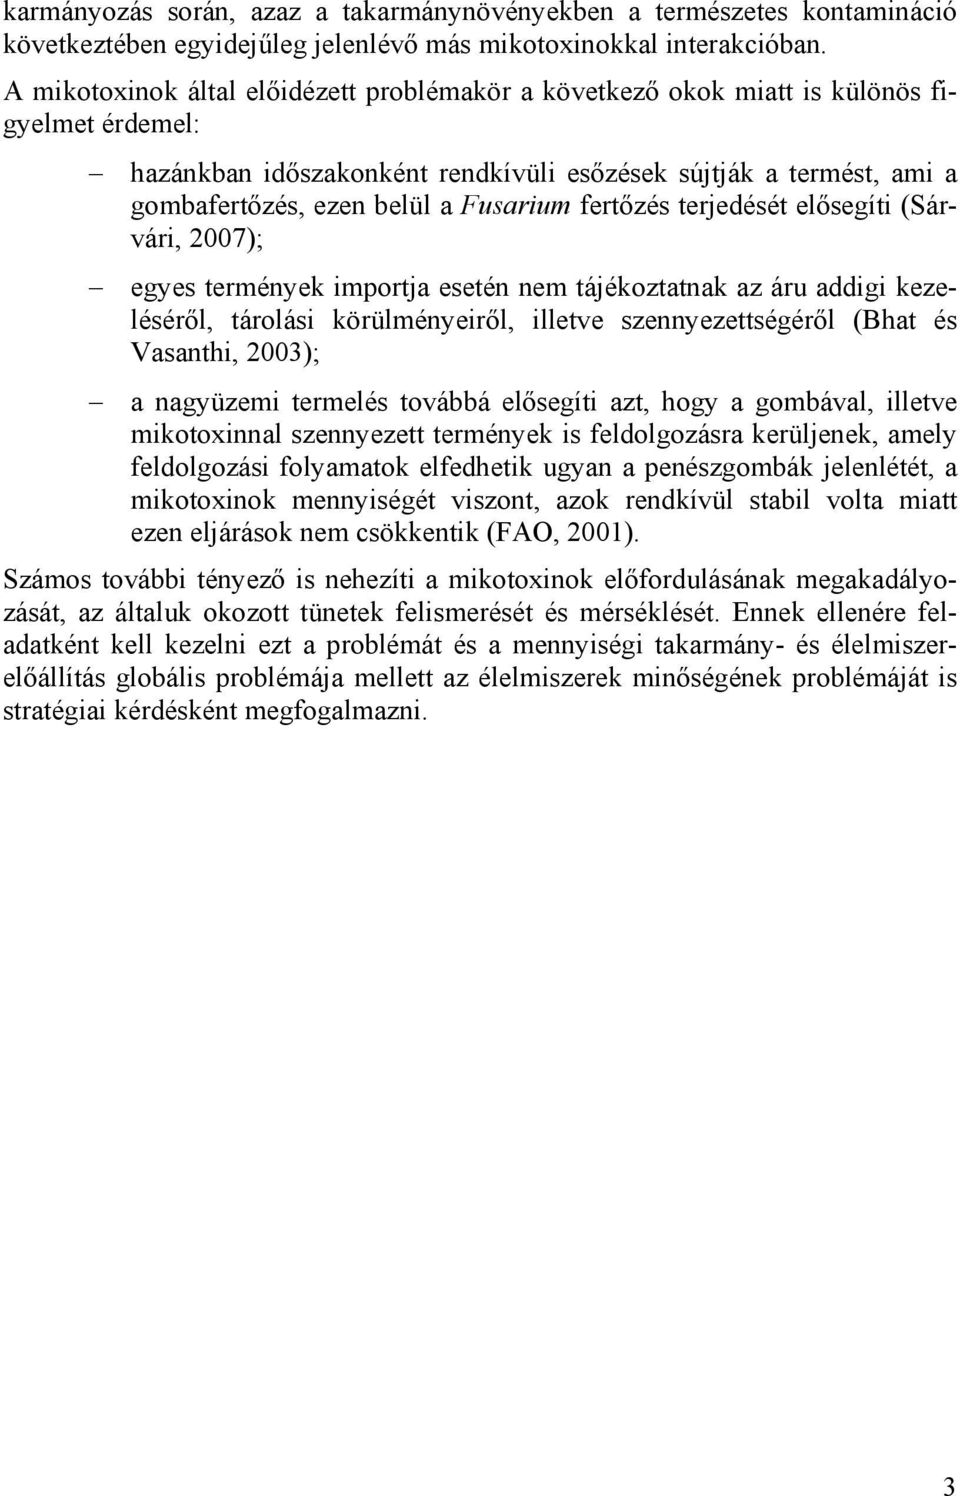 Fusarium fertőzés terjedését elősegíti (Sárvári, 2007); egyes termények importja esetén nem tájékoztatnak az áru addigi kezeléséről, tárolási körülményeiről, illetve szennyezettségéről (Bhat és